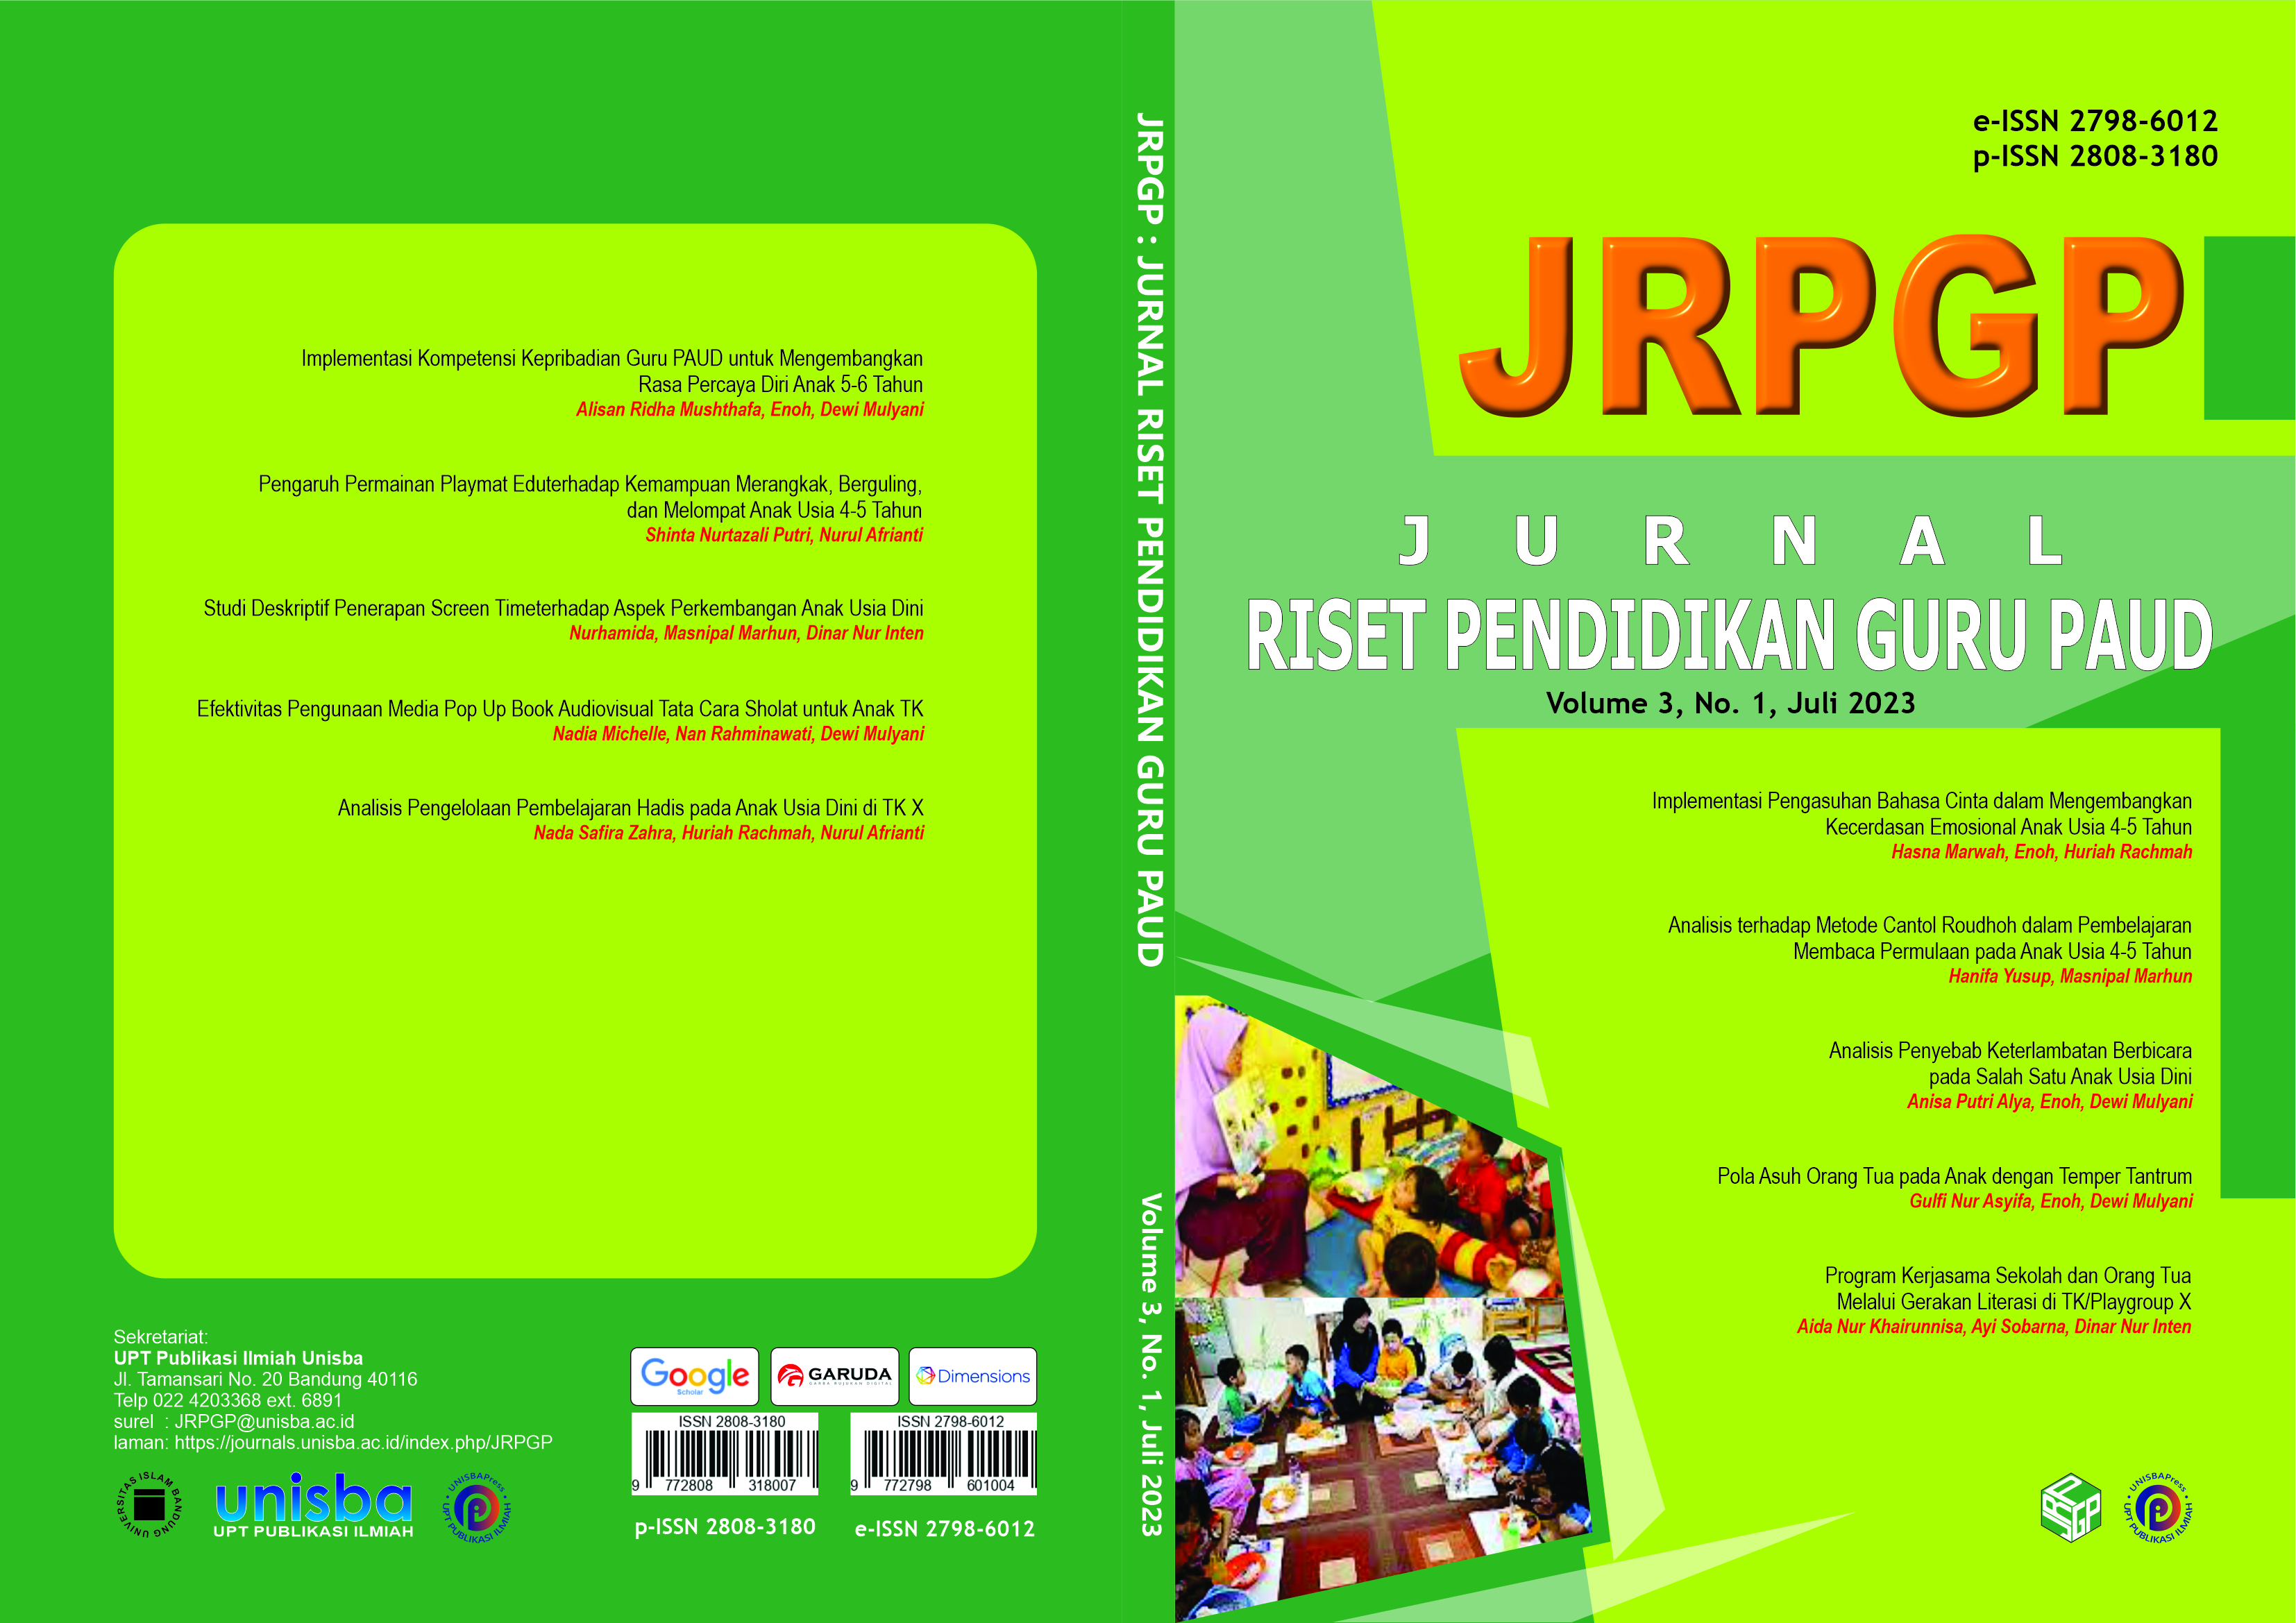 					View Volume 3, No. 1, Juli 2023, Jurnal Riset Pendidikan Guru Paud (JRPGP)
				